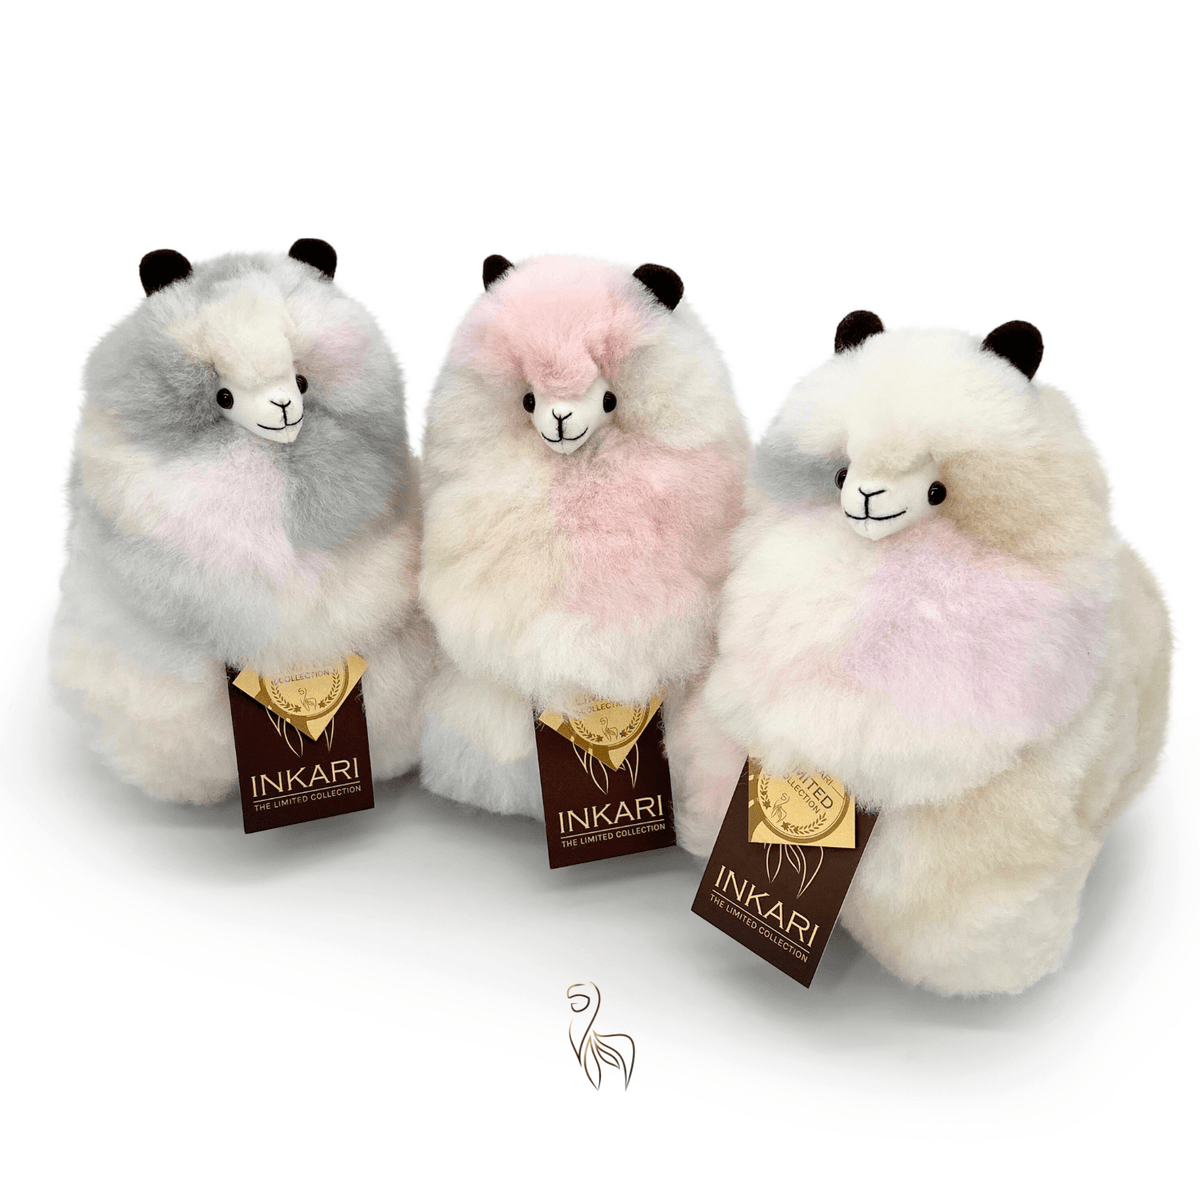 Blush - Small Alpaca Toy (23cm) - Limited Edition